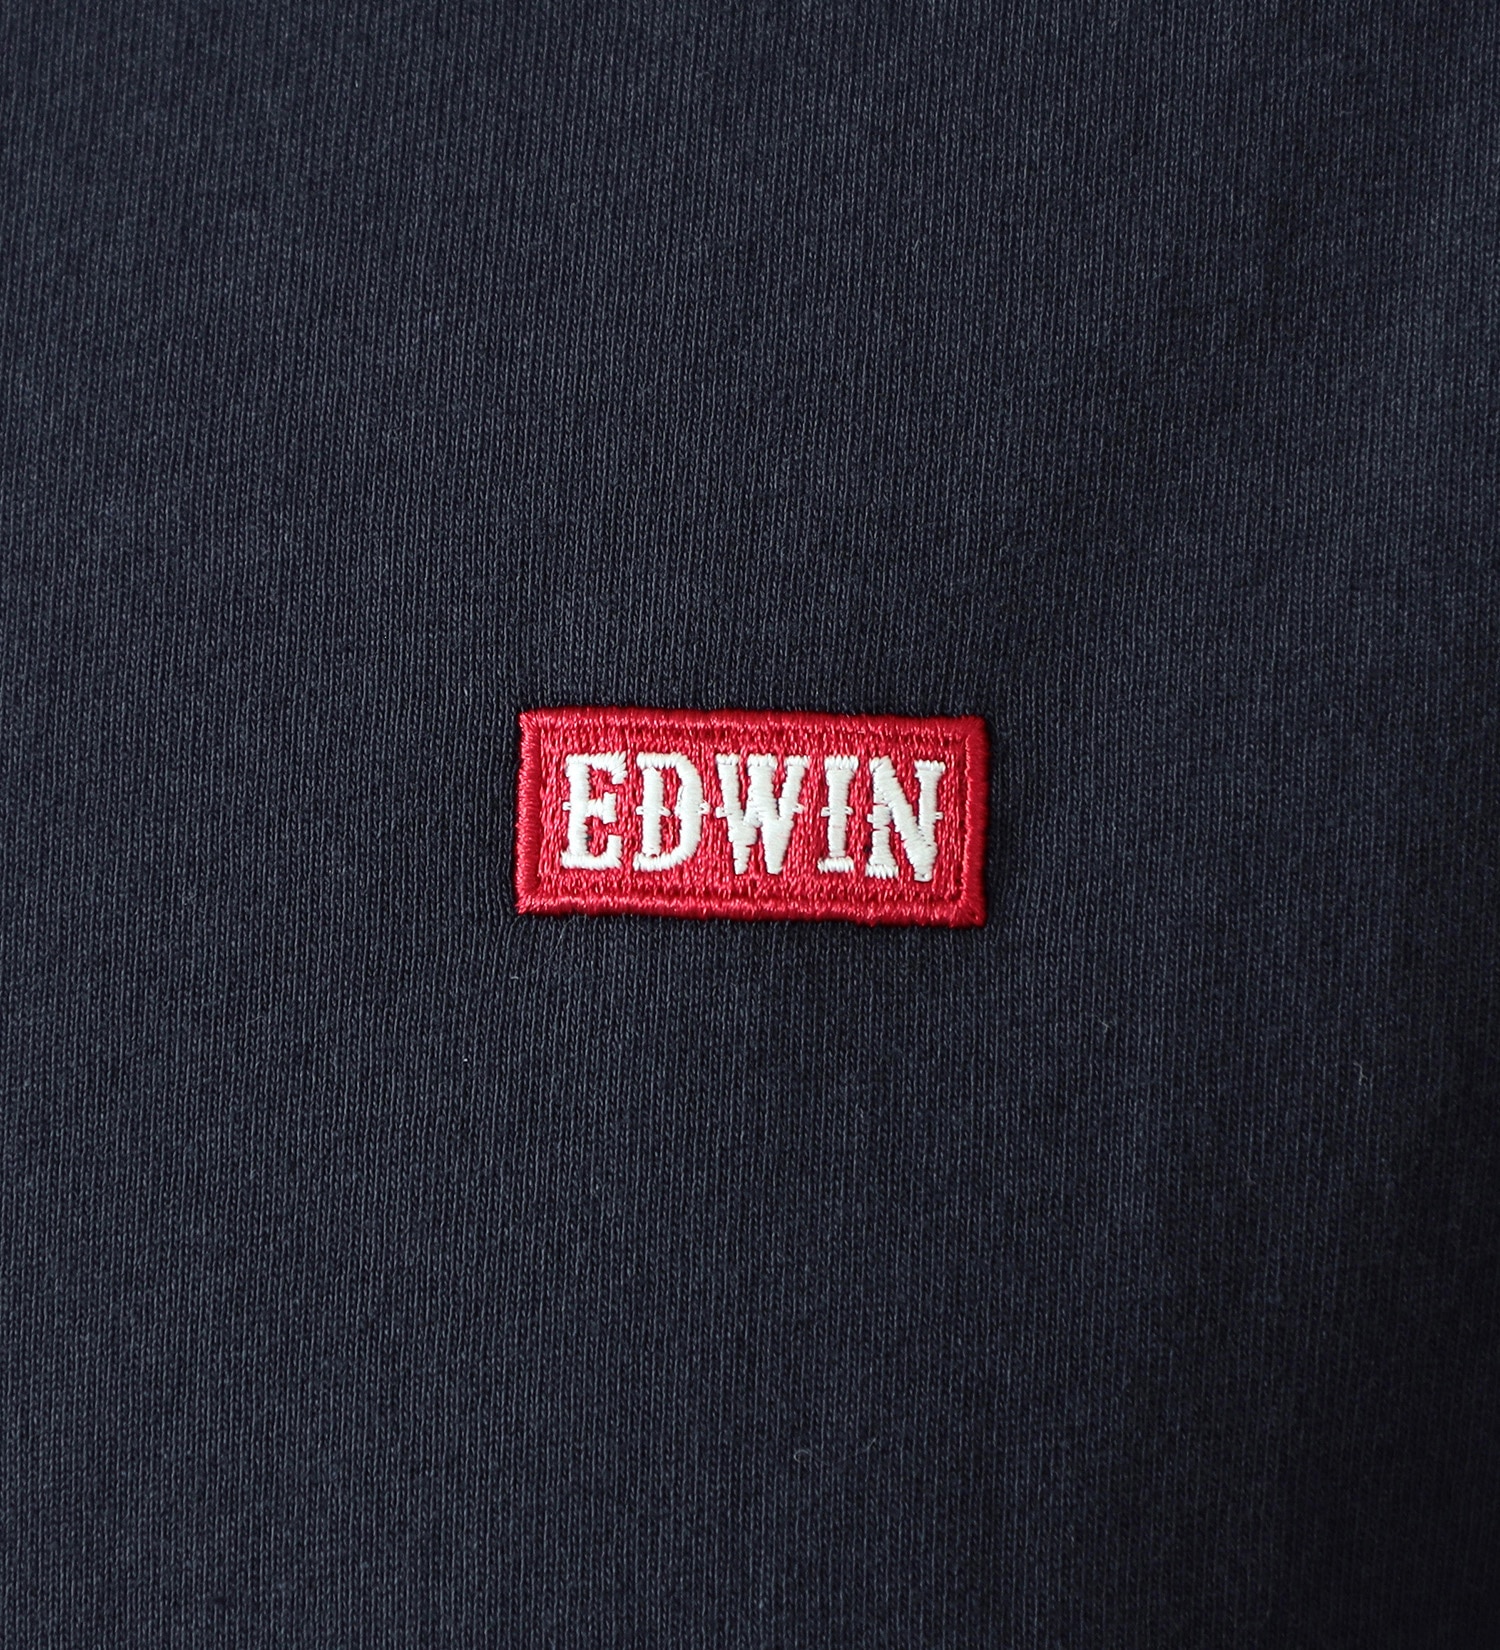 EDWIN(エドウイン)のボックスロゴエンブレムTシャツ|トップス/Tシャツ/カットソー/メンズ|ネイビー